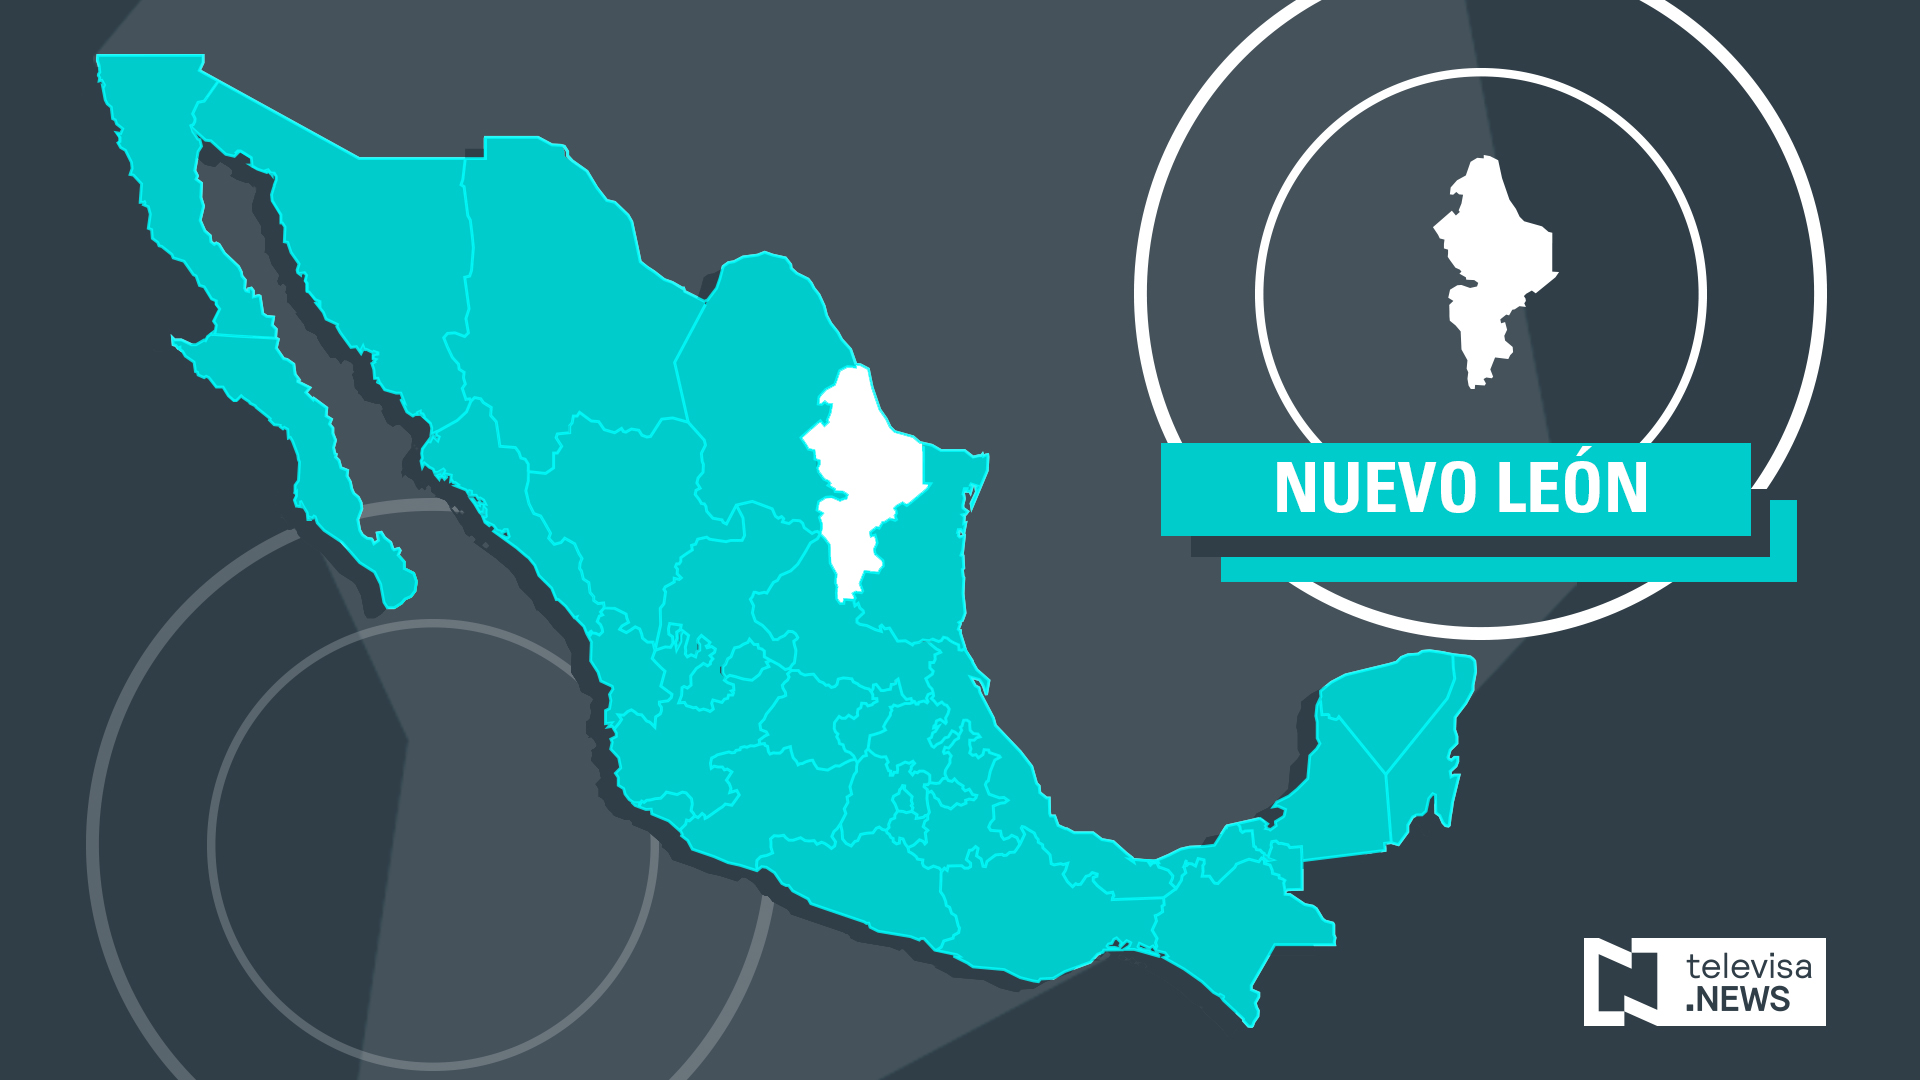 Aseguran armas tras enfrentamiento en Nuevo León